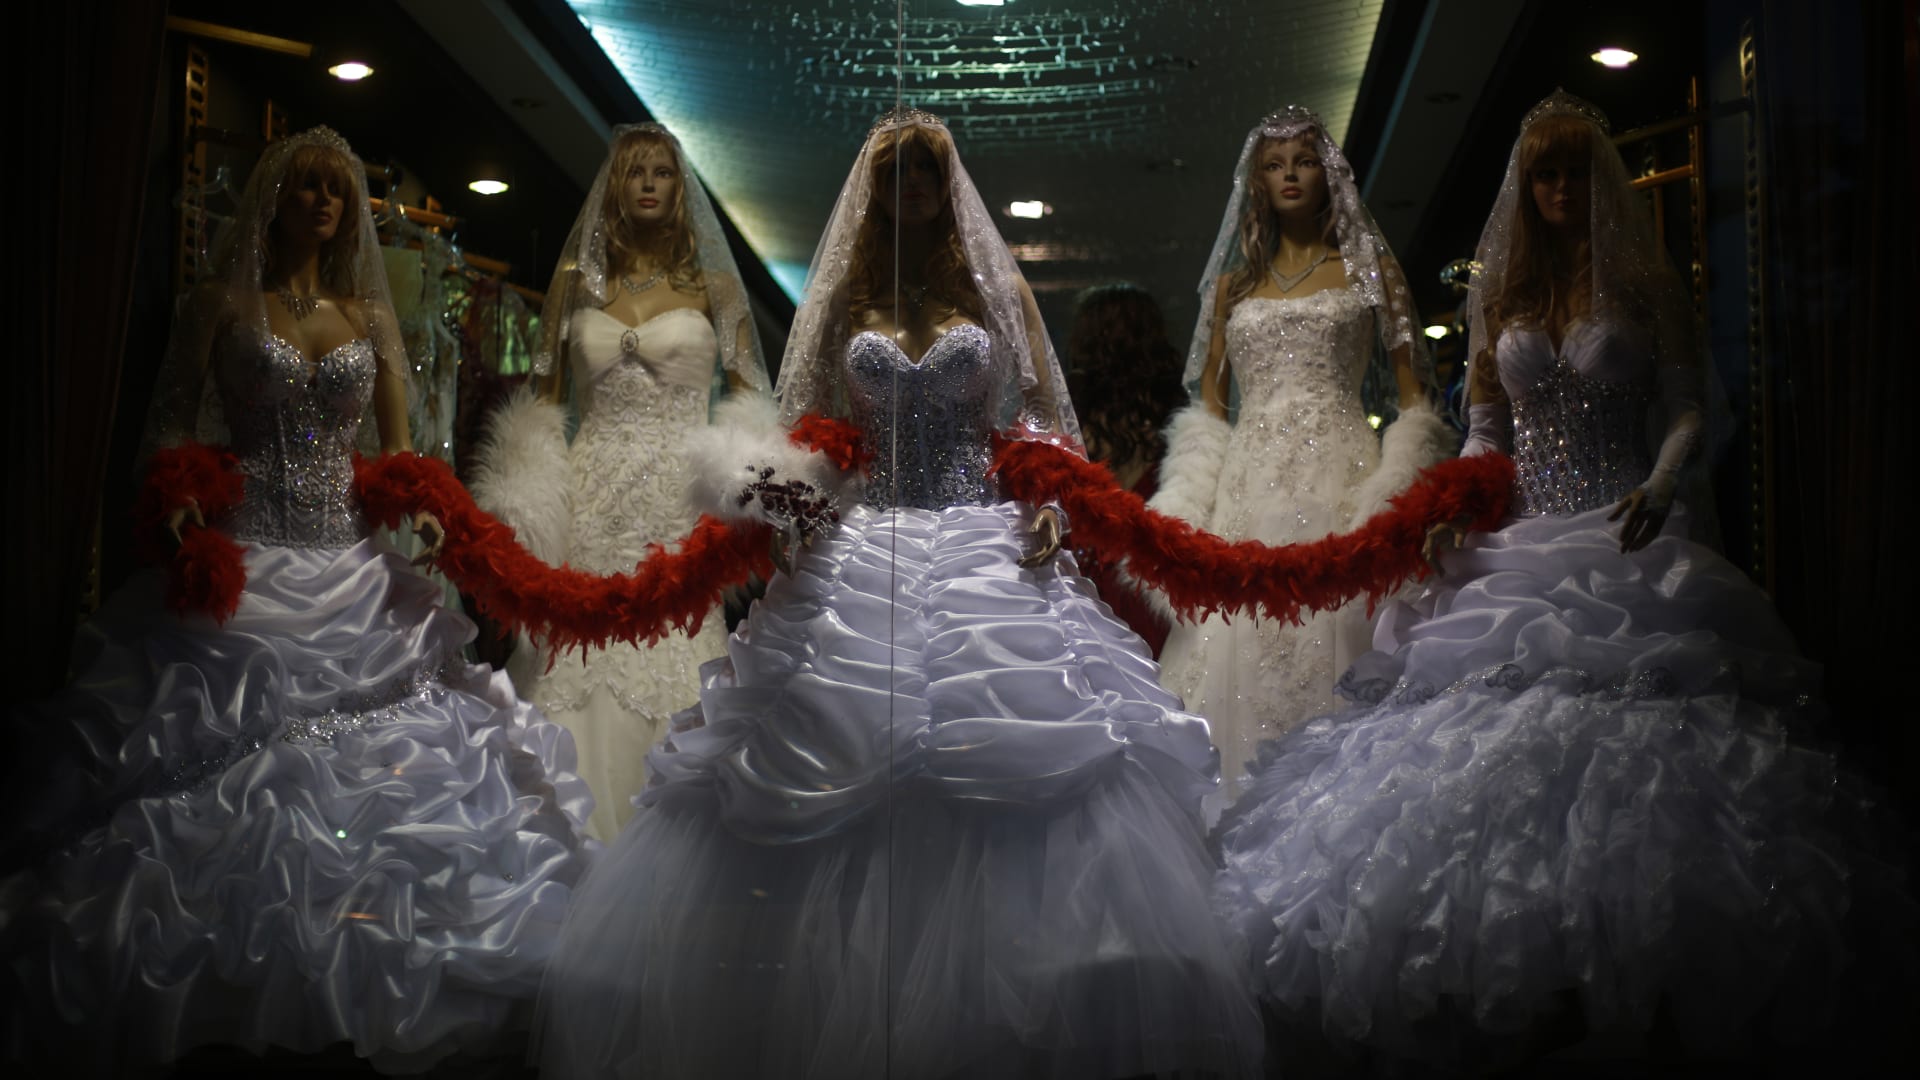 دار الإفتاء المصرية توضح خلاصة ما توصلت إليه بشأن "زواج التجربة"